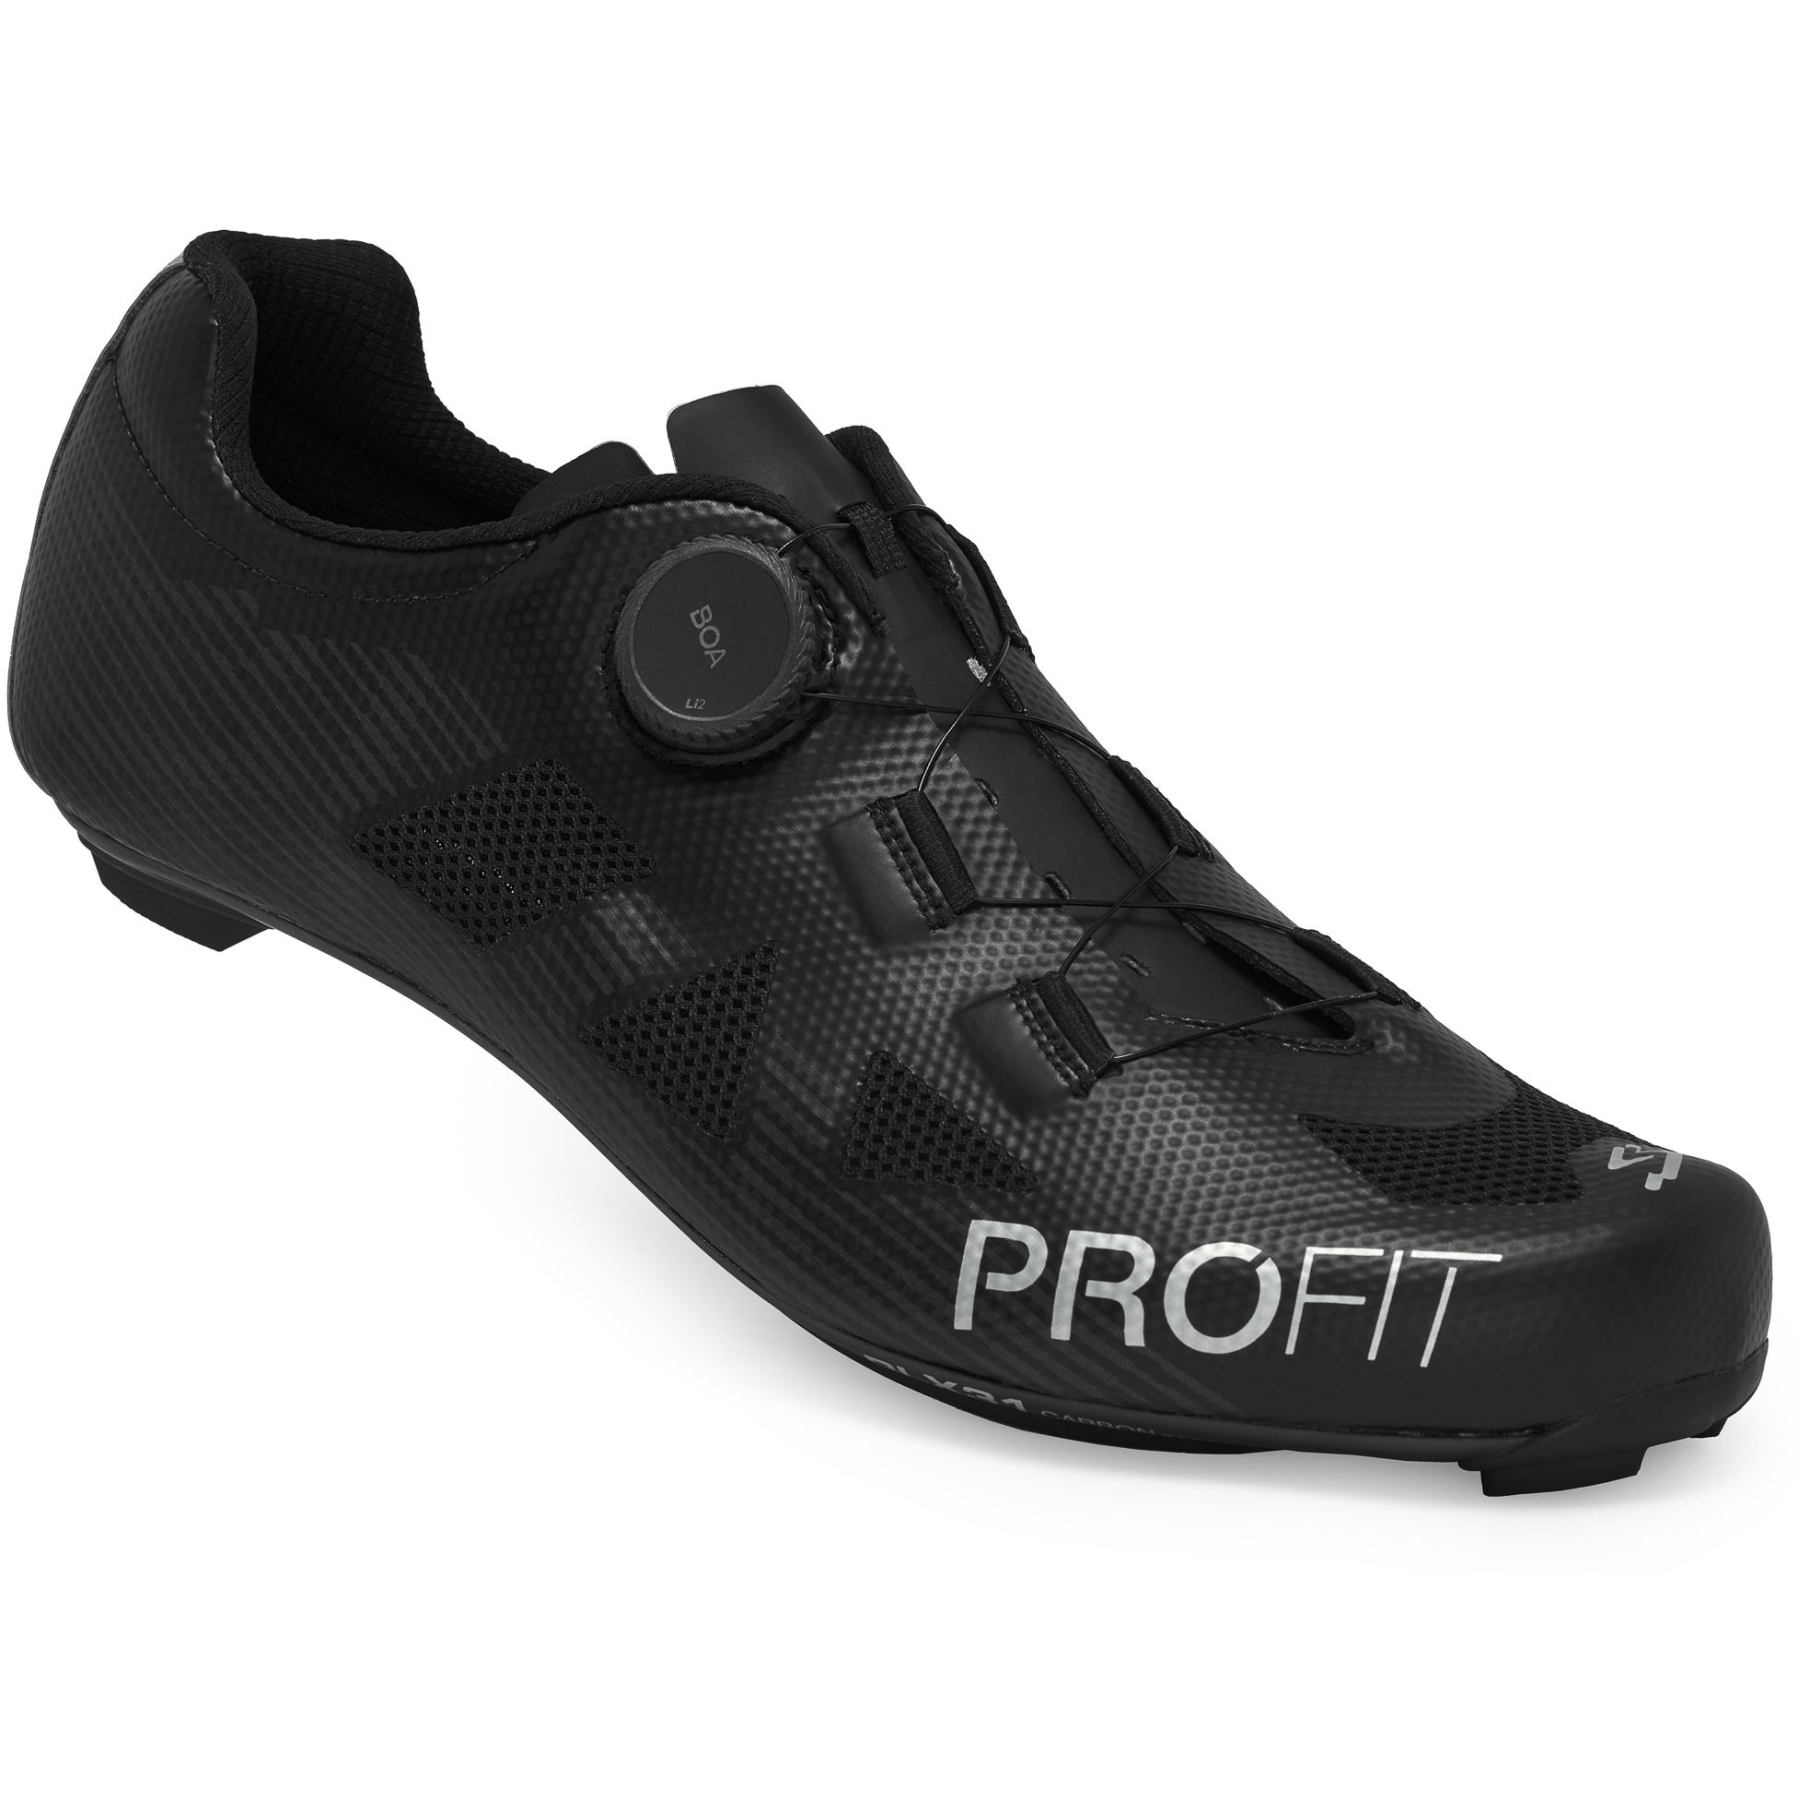 Produktbild von Spiuk PROFIT Carbon Rennradschuhe - schwarz